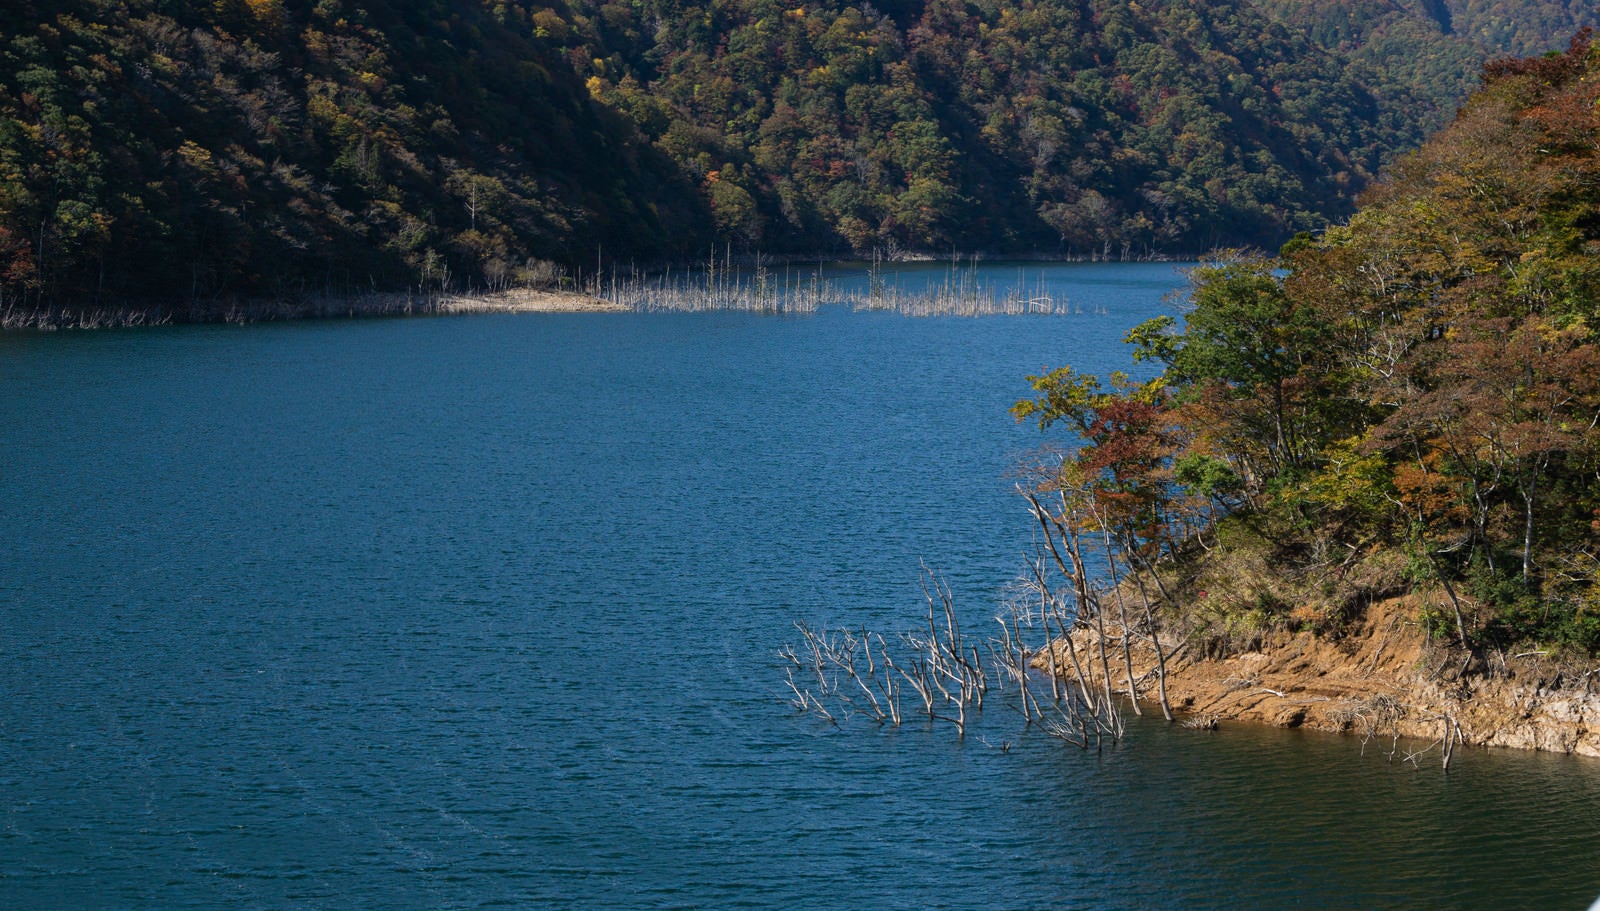 「風で細かく波立つ秋の徳山湖湖面」の写真